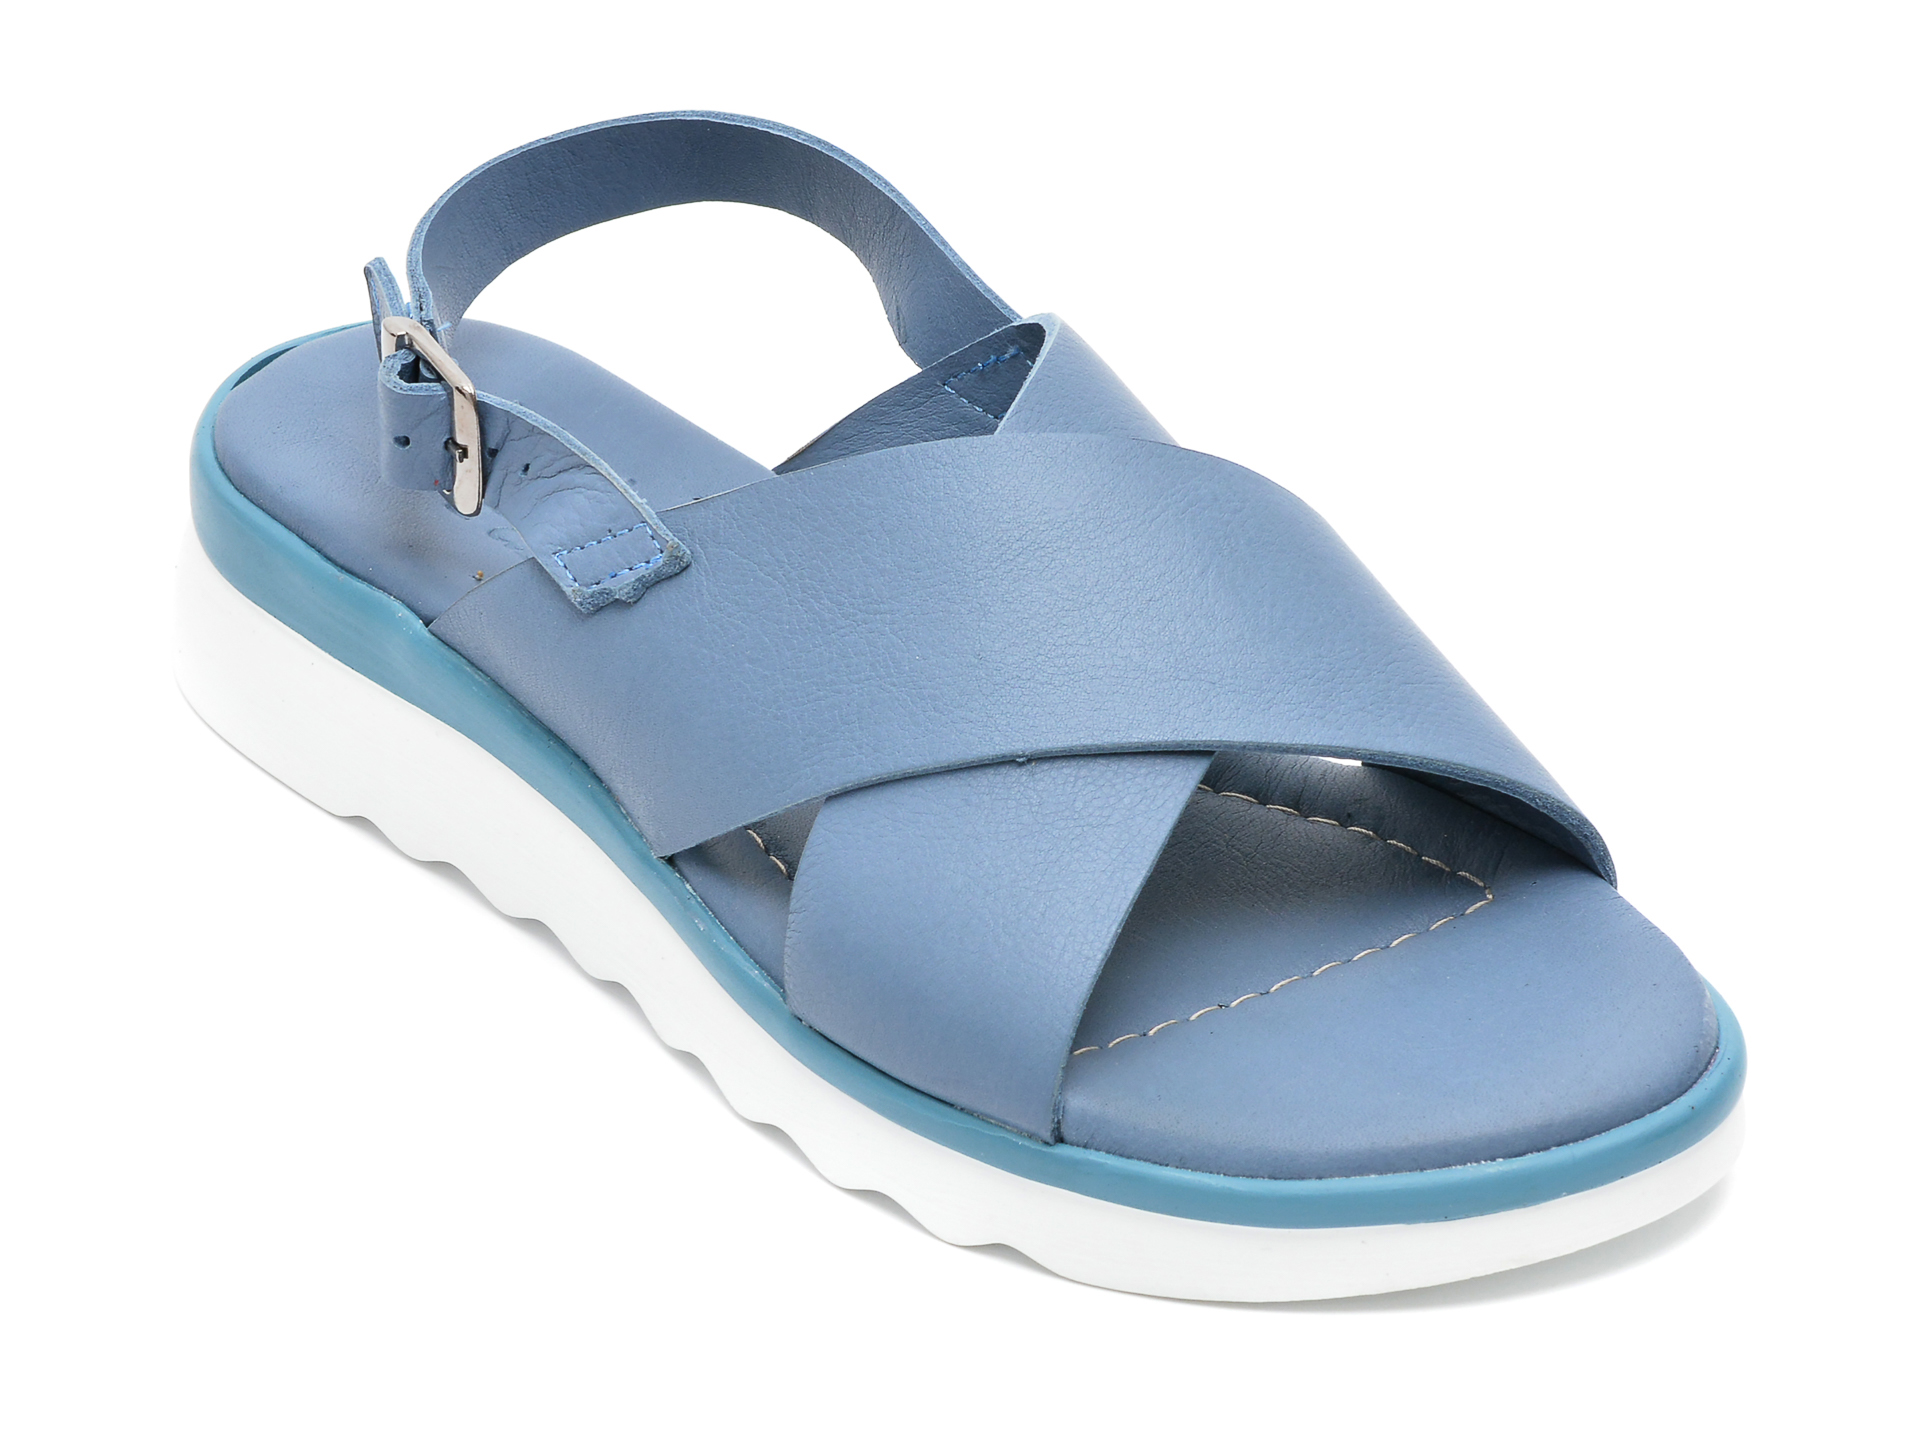 Sandale FLAVIA PASSINI albastre, 4502, din piele naturala /femei/sandale INCALTAMINTE